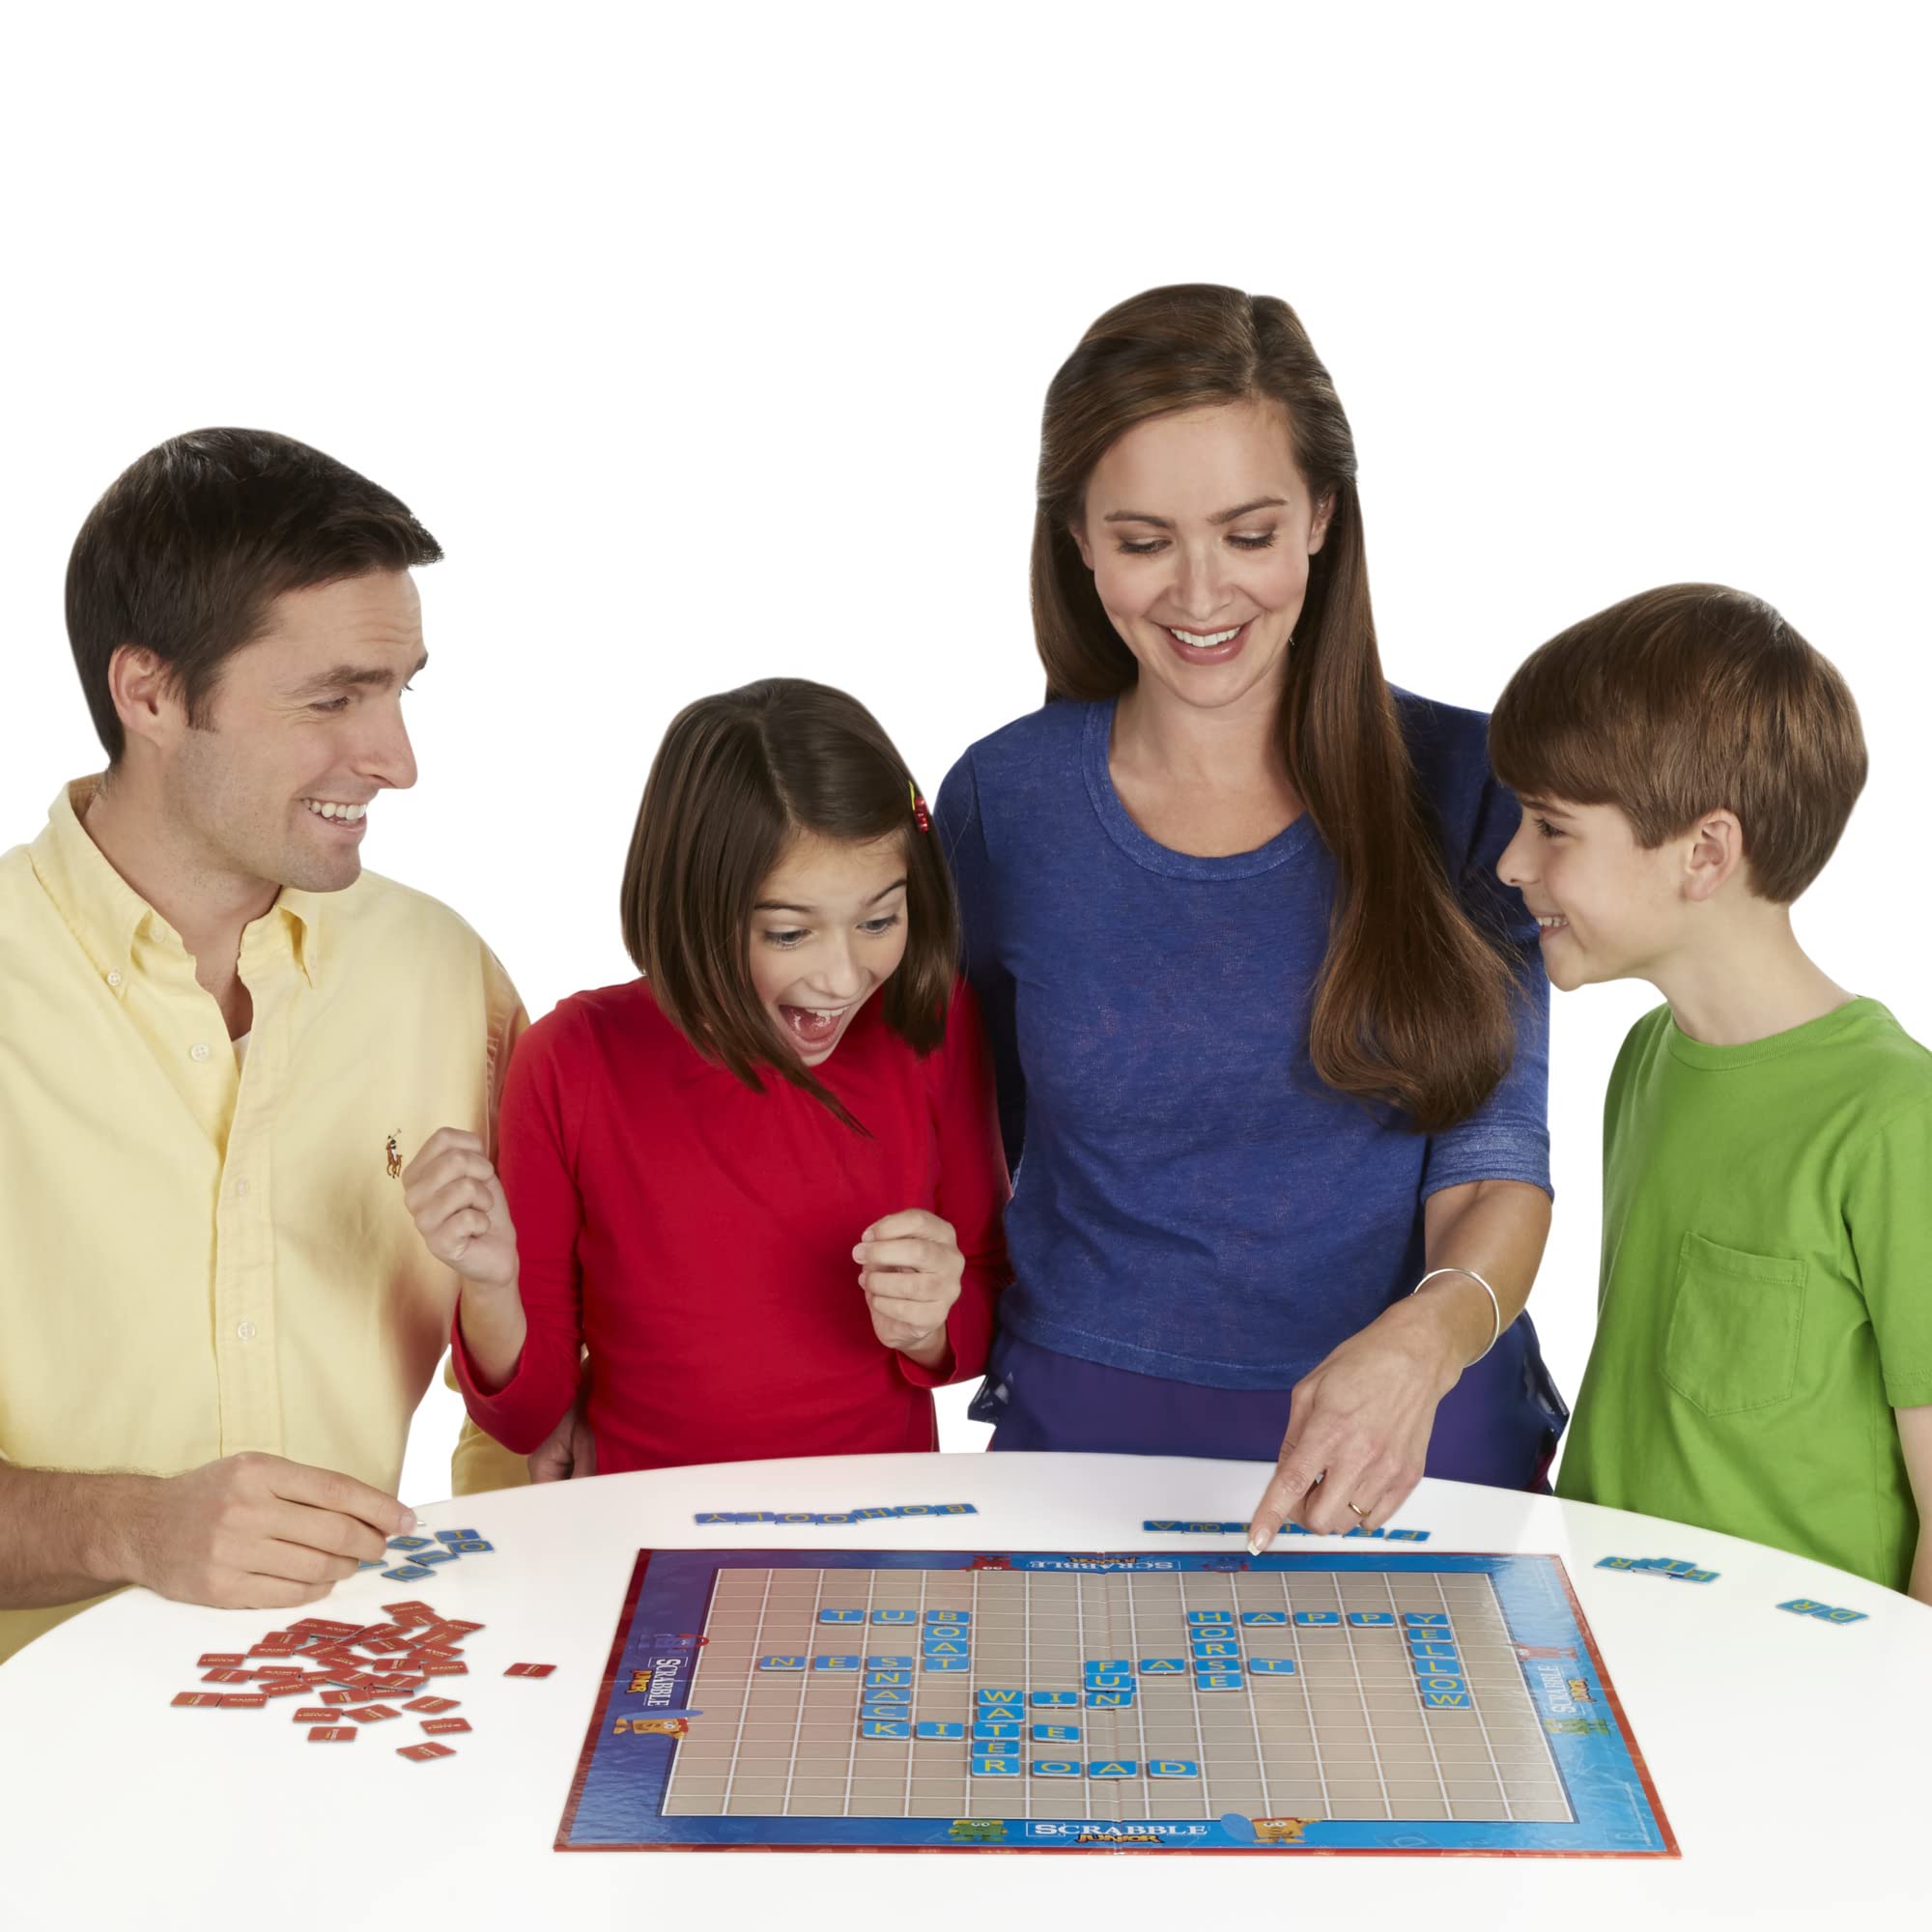 Hasbro Gaming Scrabble Junior Game